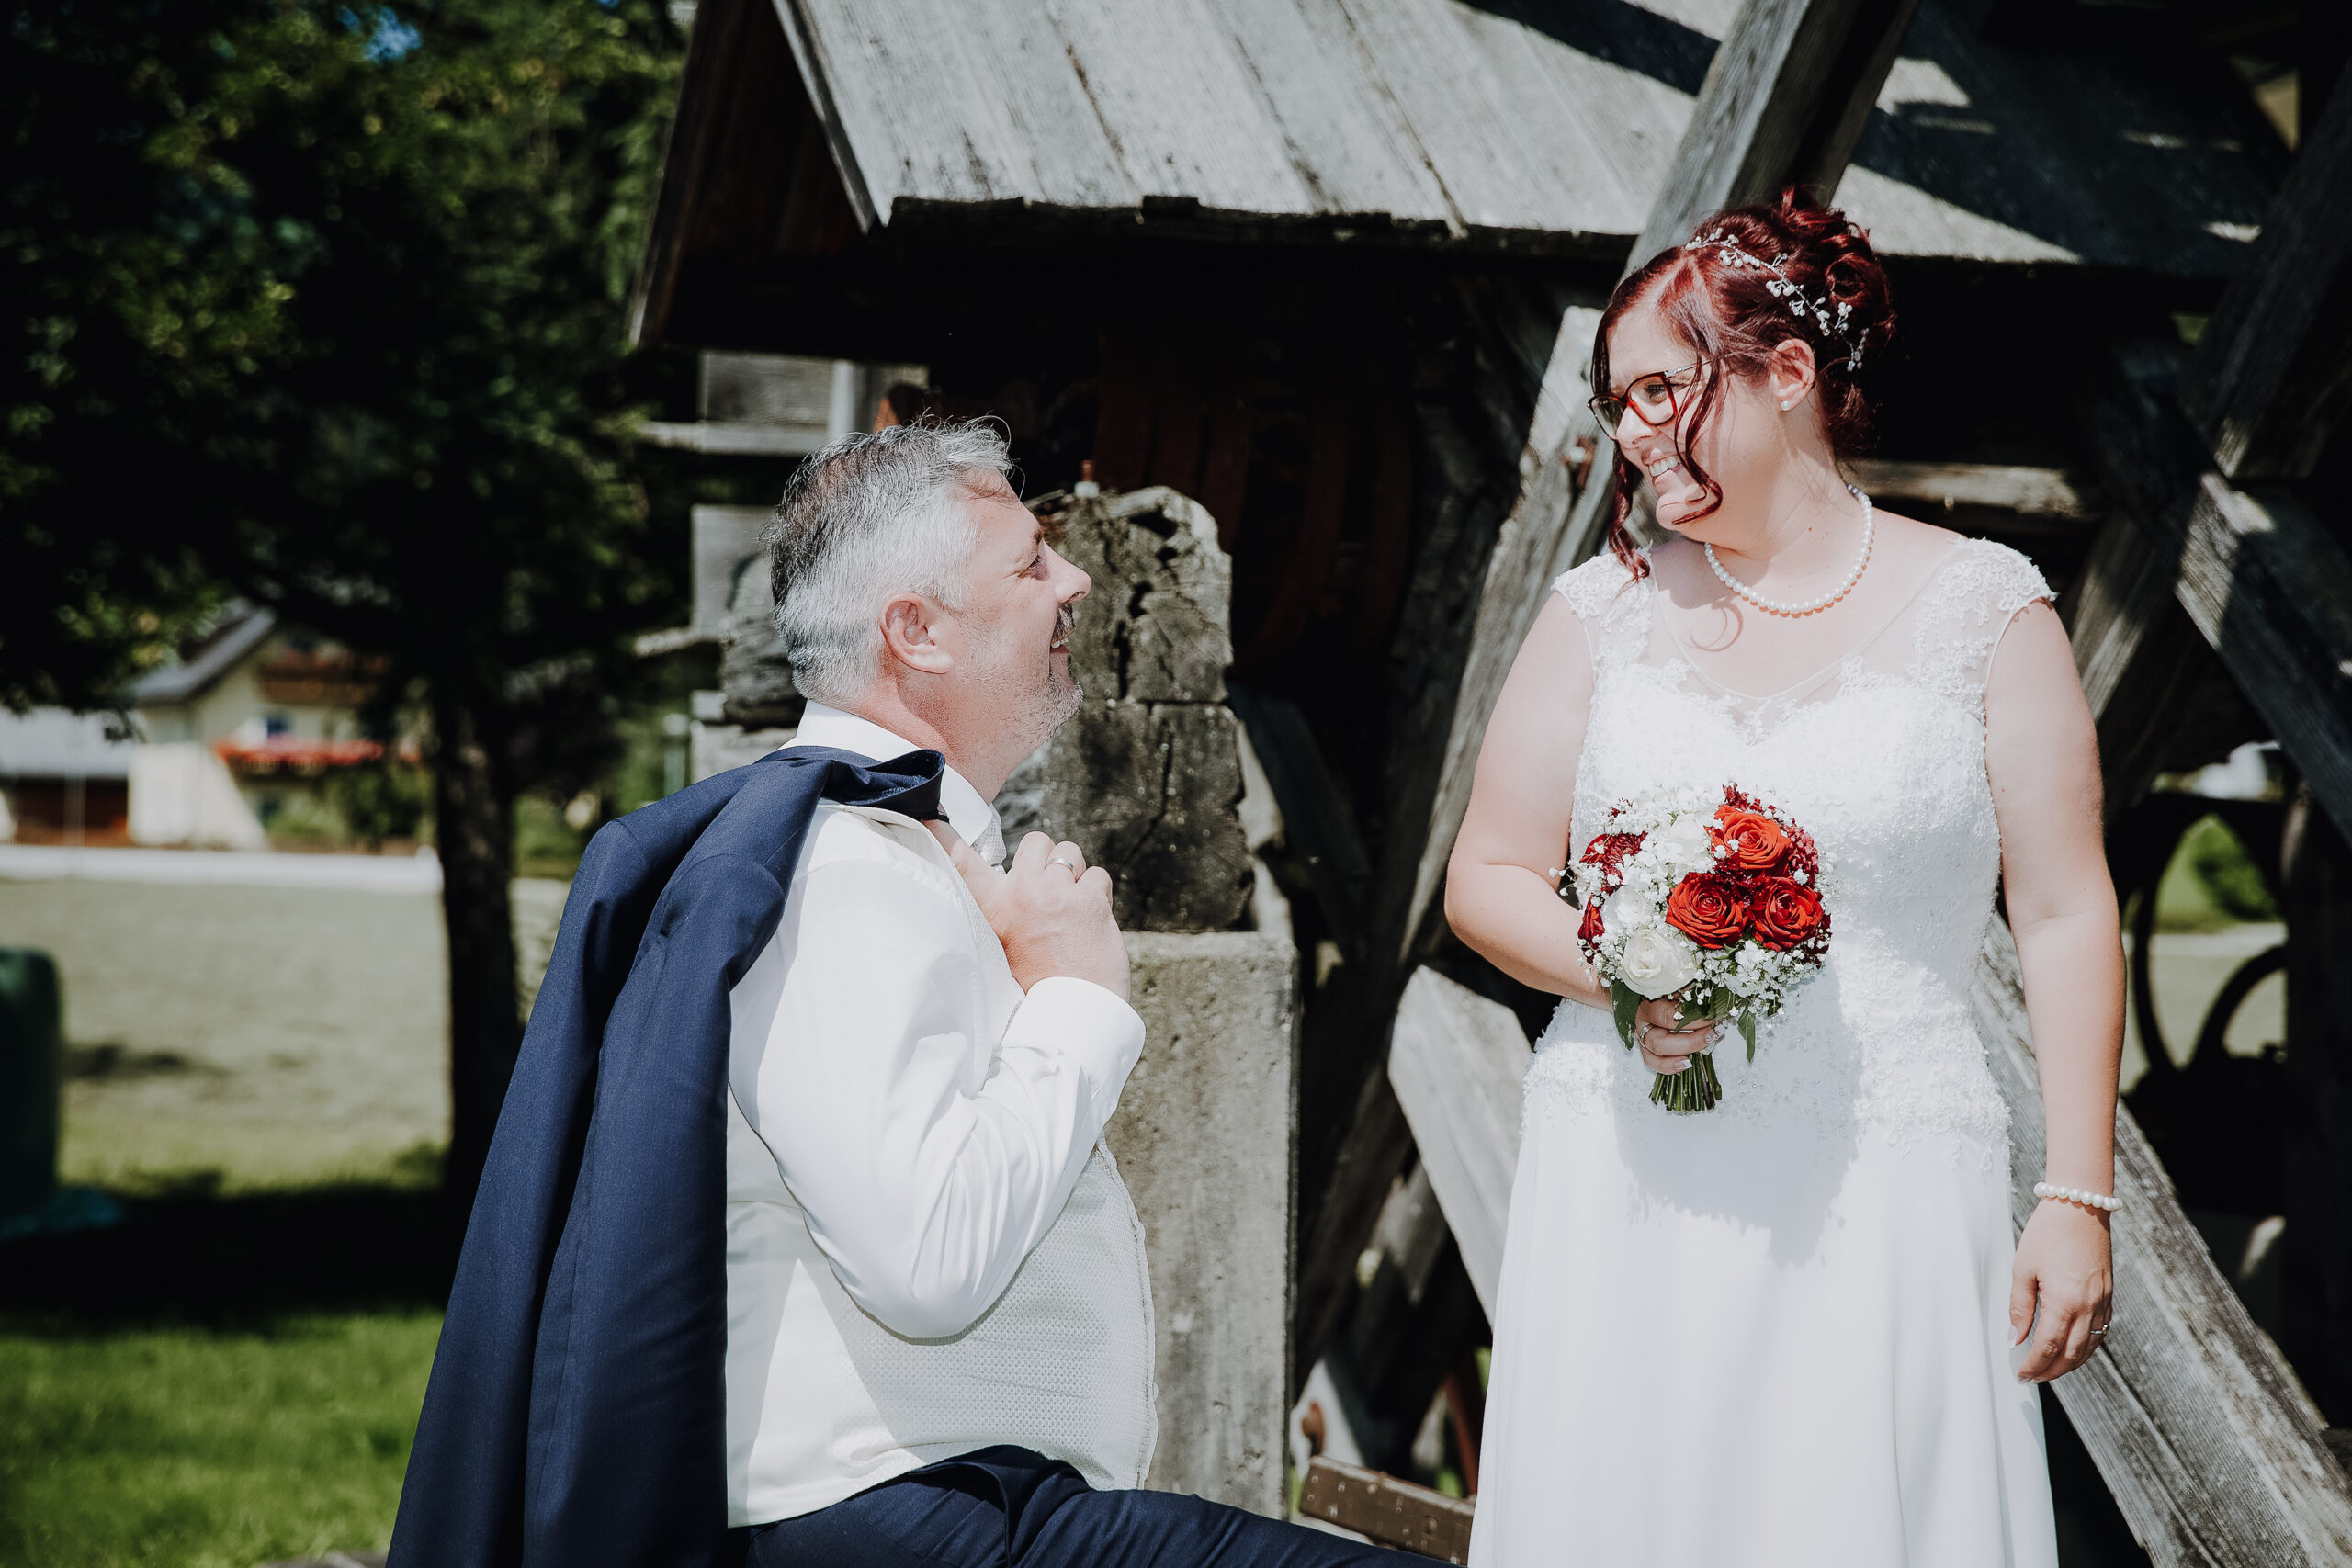 Brautpaar-Shooting, Hochzeitsguide, Hochzeitsplaner, Hochzeit, Fotografie, Hochzeitsfotografie, Klagenfurt, Kärnten, Wolfgang Ertl, Fotograf, Hochzeitsfotograf